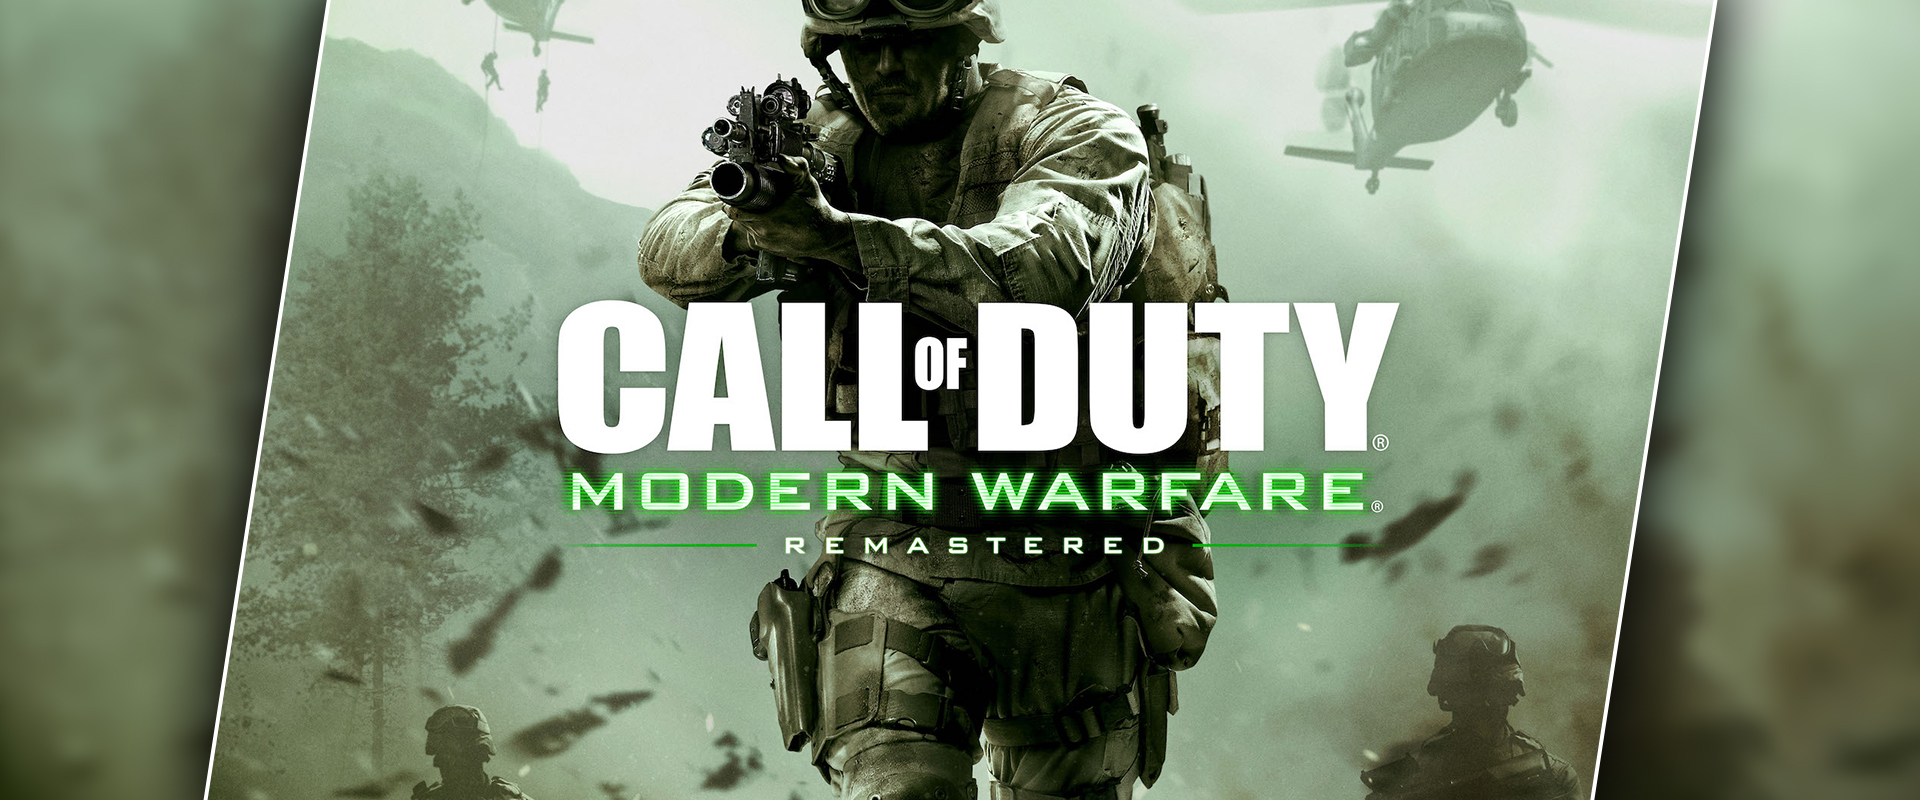 Call of Duty: Modern Warfare Remastered - háború újrahangszerelve